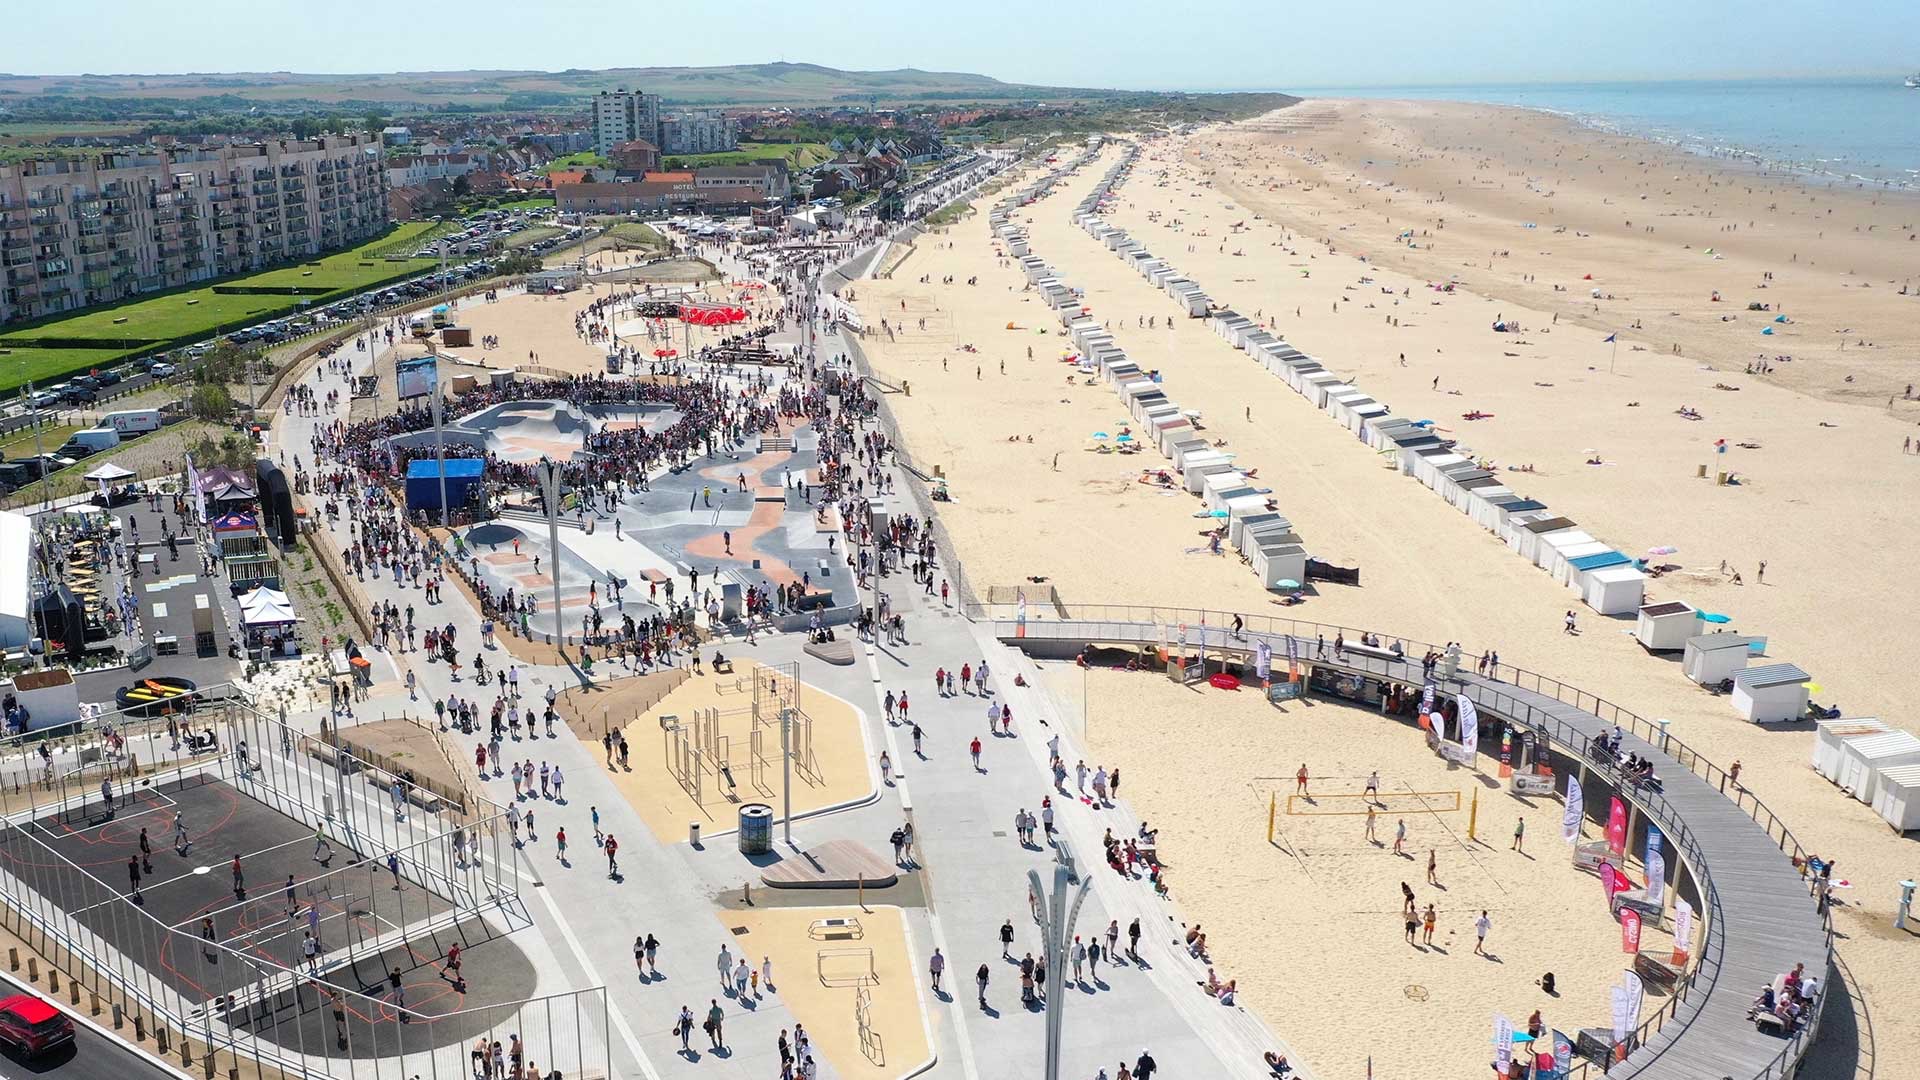 Vue aérienne de la plage de Calais et ses nouveaux aménagements adaptés pour les familles.